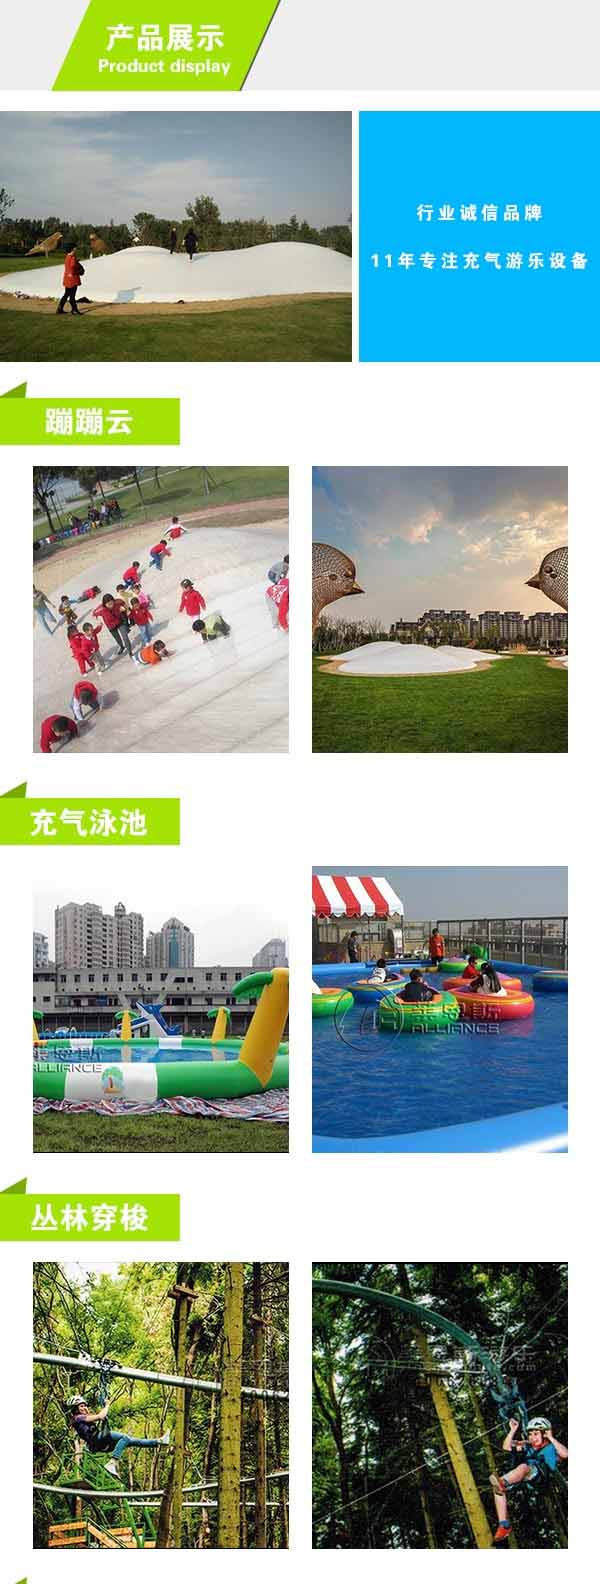 广州充气水乐园建造公司  莱恩斯游乐  广州充气水乐园 3